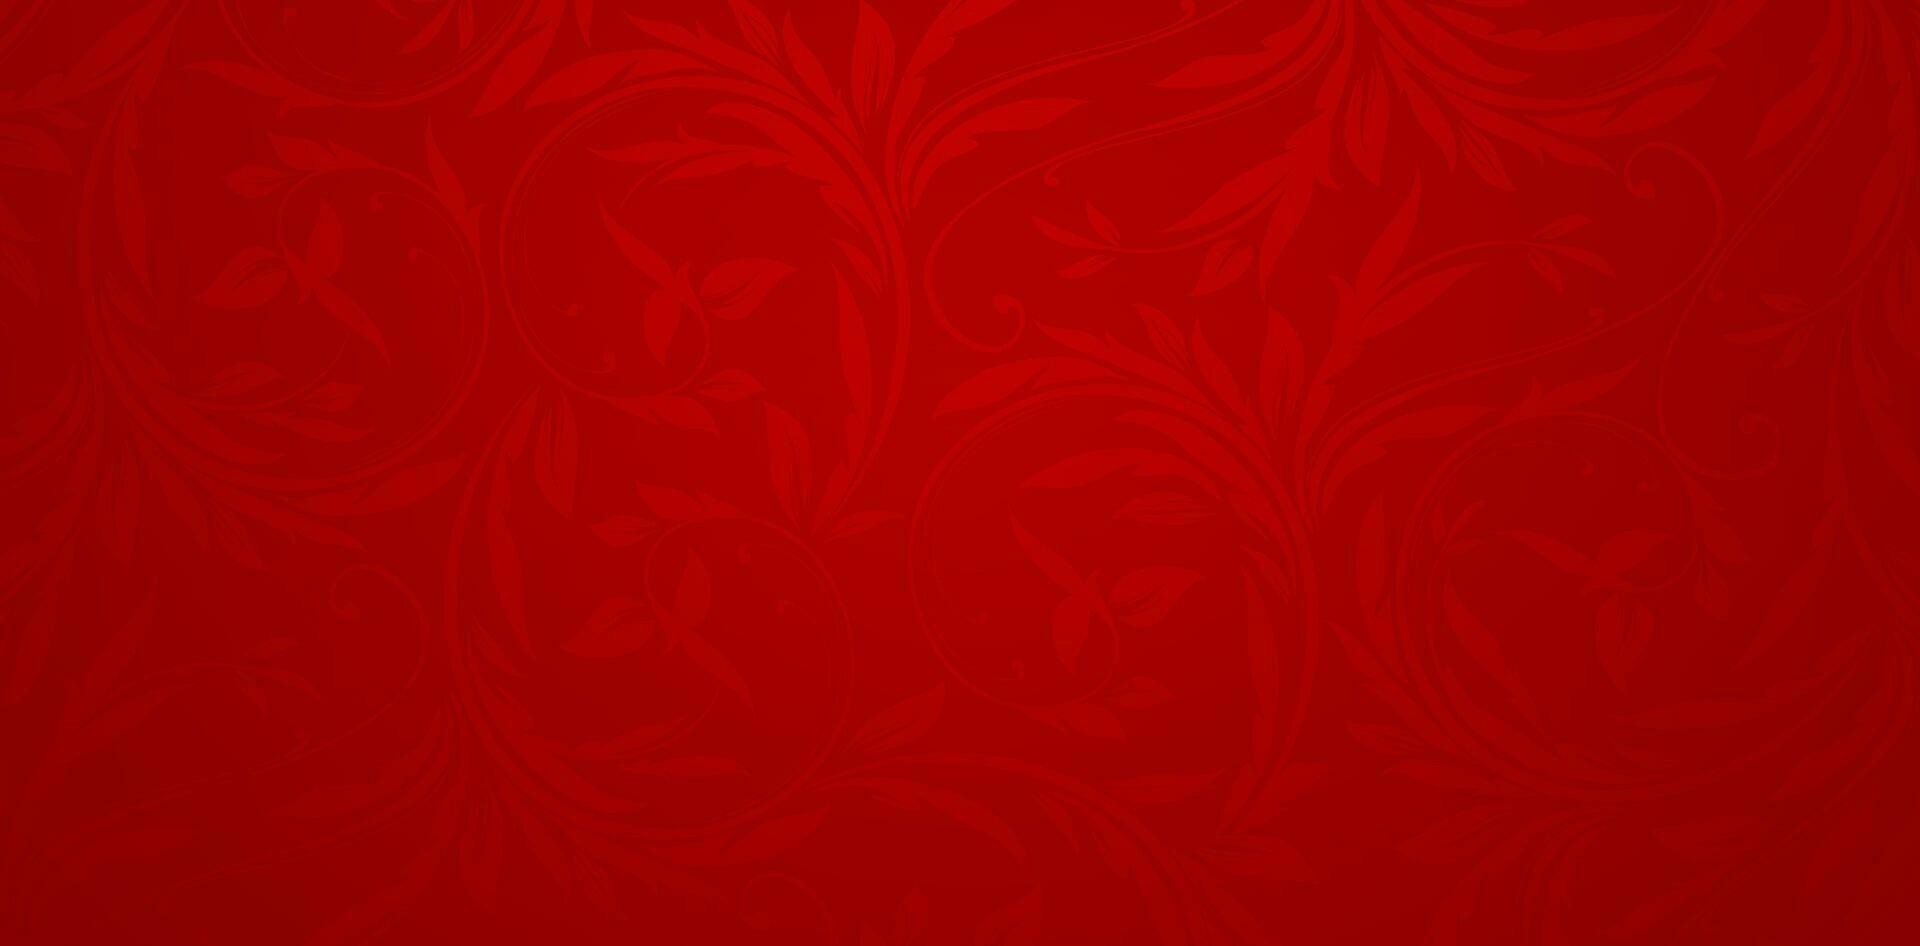 vector illustratie overladen bloemen patroon decoratief donker rood kleur voor presentaties marketing, dekken, advertenties, boeken dekt, digitaal interfaces, afdrukken ontwerp Sjablonen materiaal, bruiloft uitnodiging kaarten